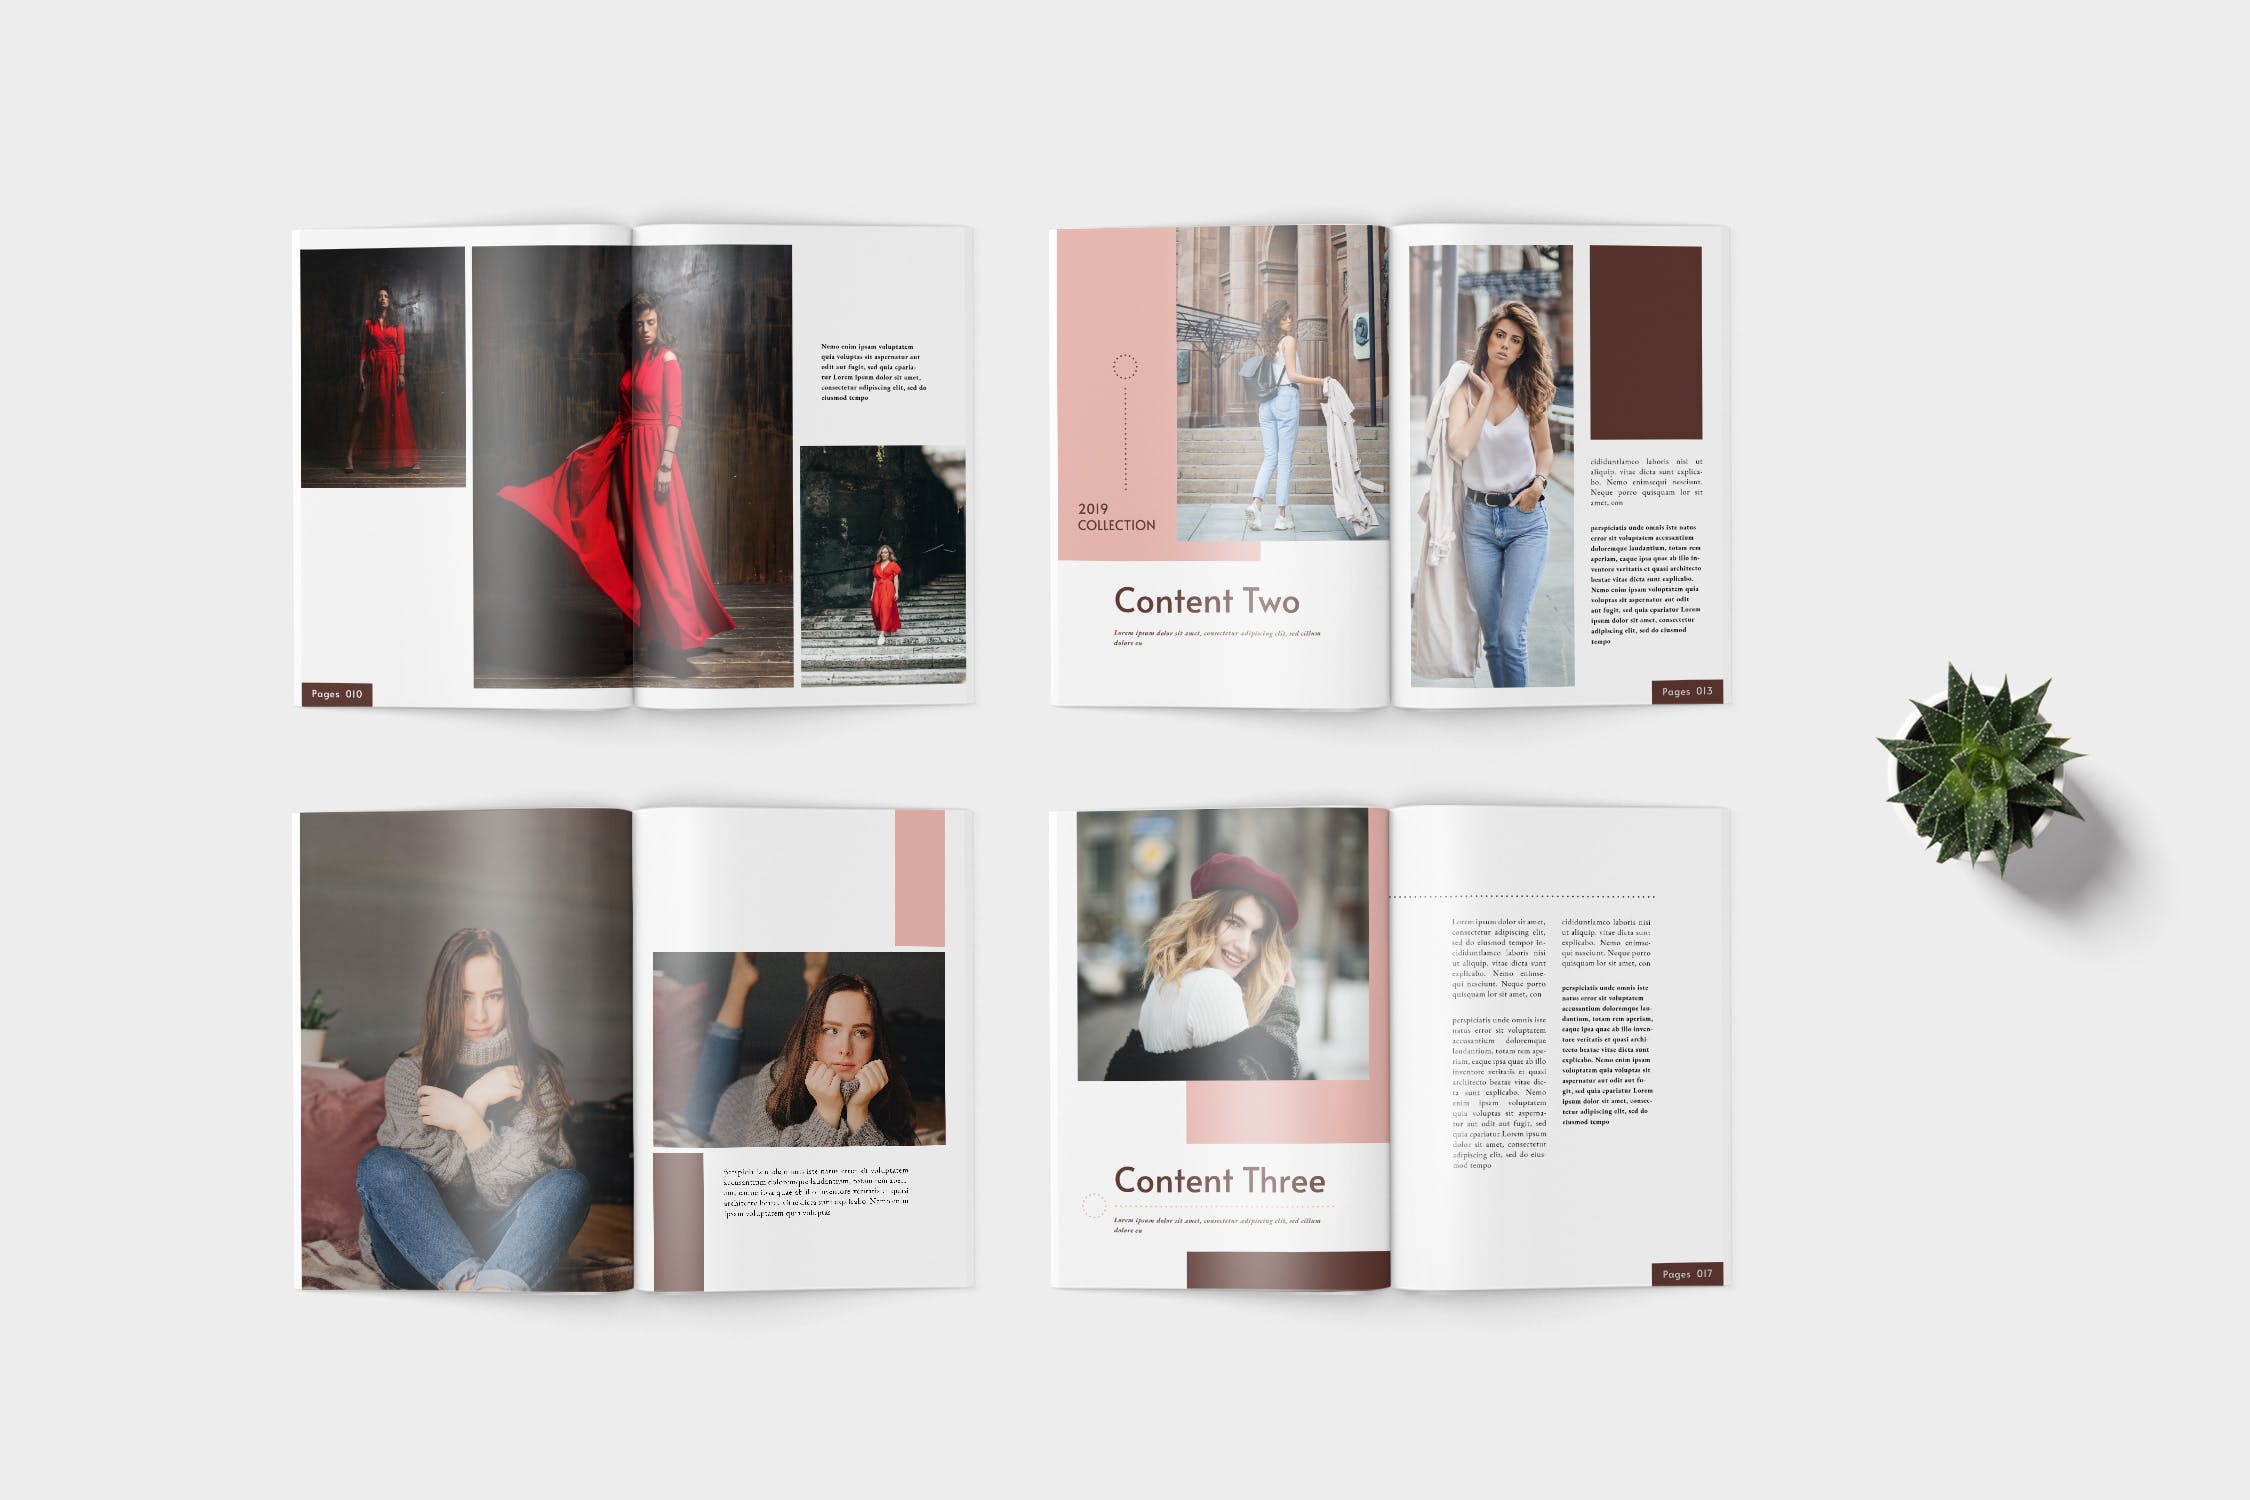 时装产品16图库精选目录设计模板 Elana Fashion Lookbook Catalogue插图(3)